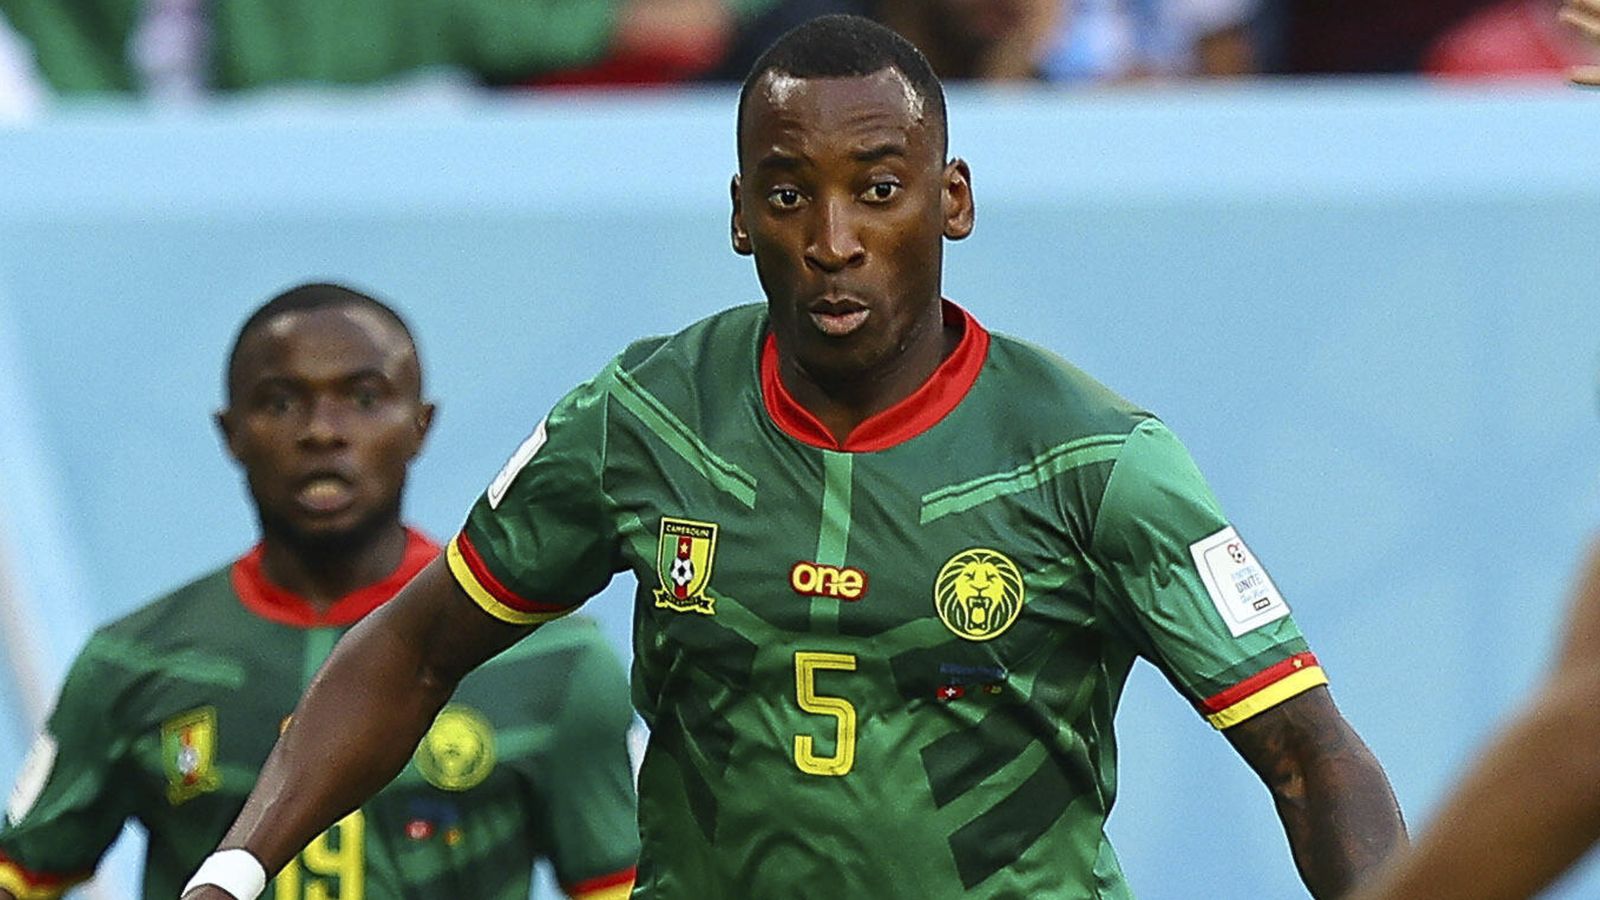 Хавбек сборной Камеруна Ондуа заявил, что не будет праздновать гол из уважения к России